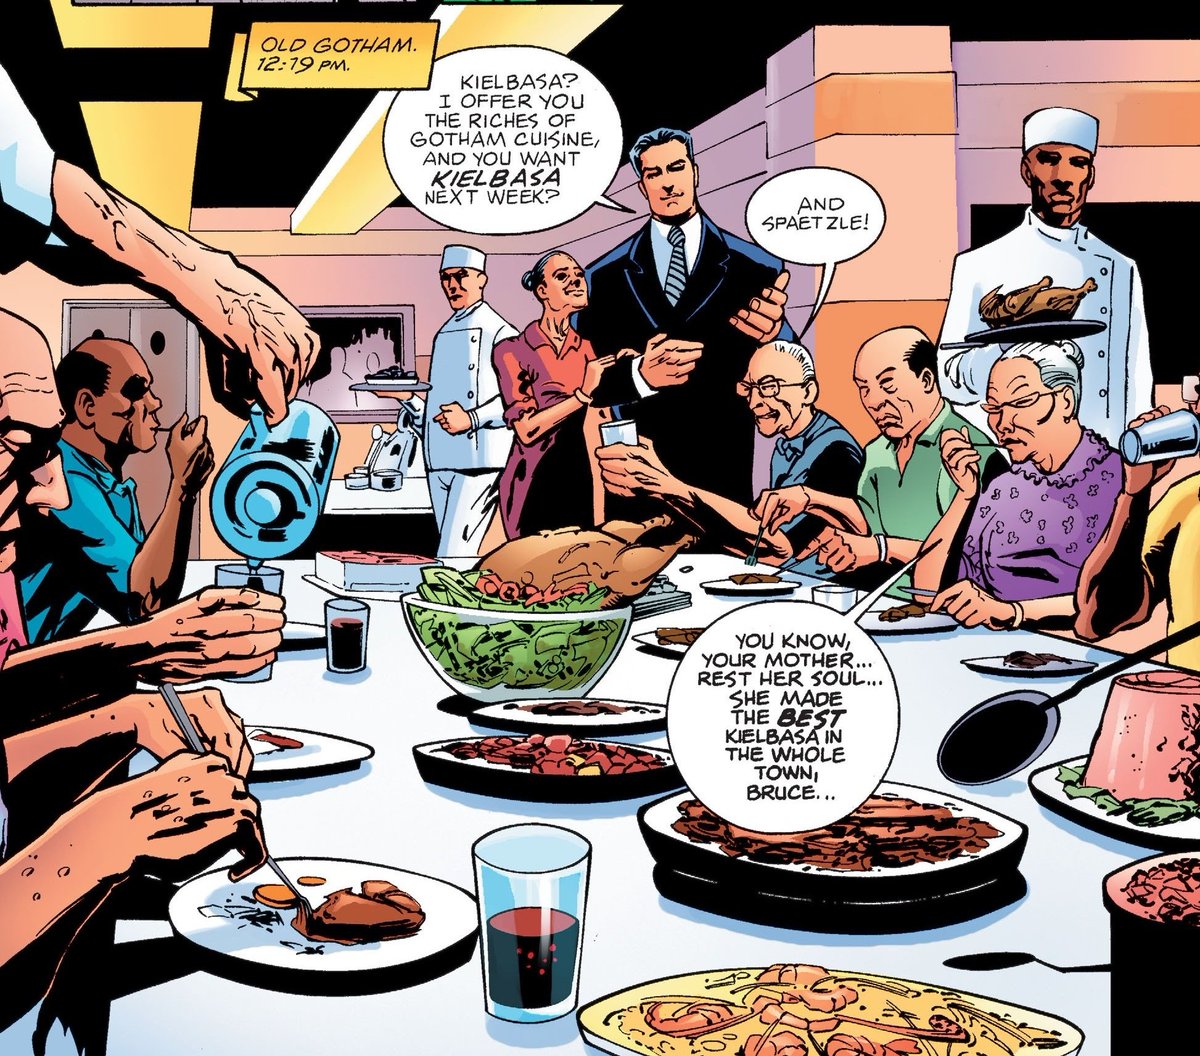 Bruce Wayne buys dinner for the elderly